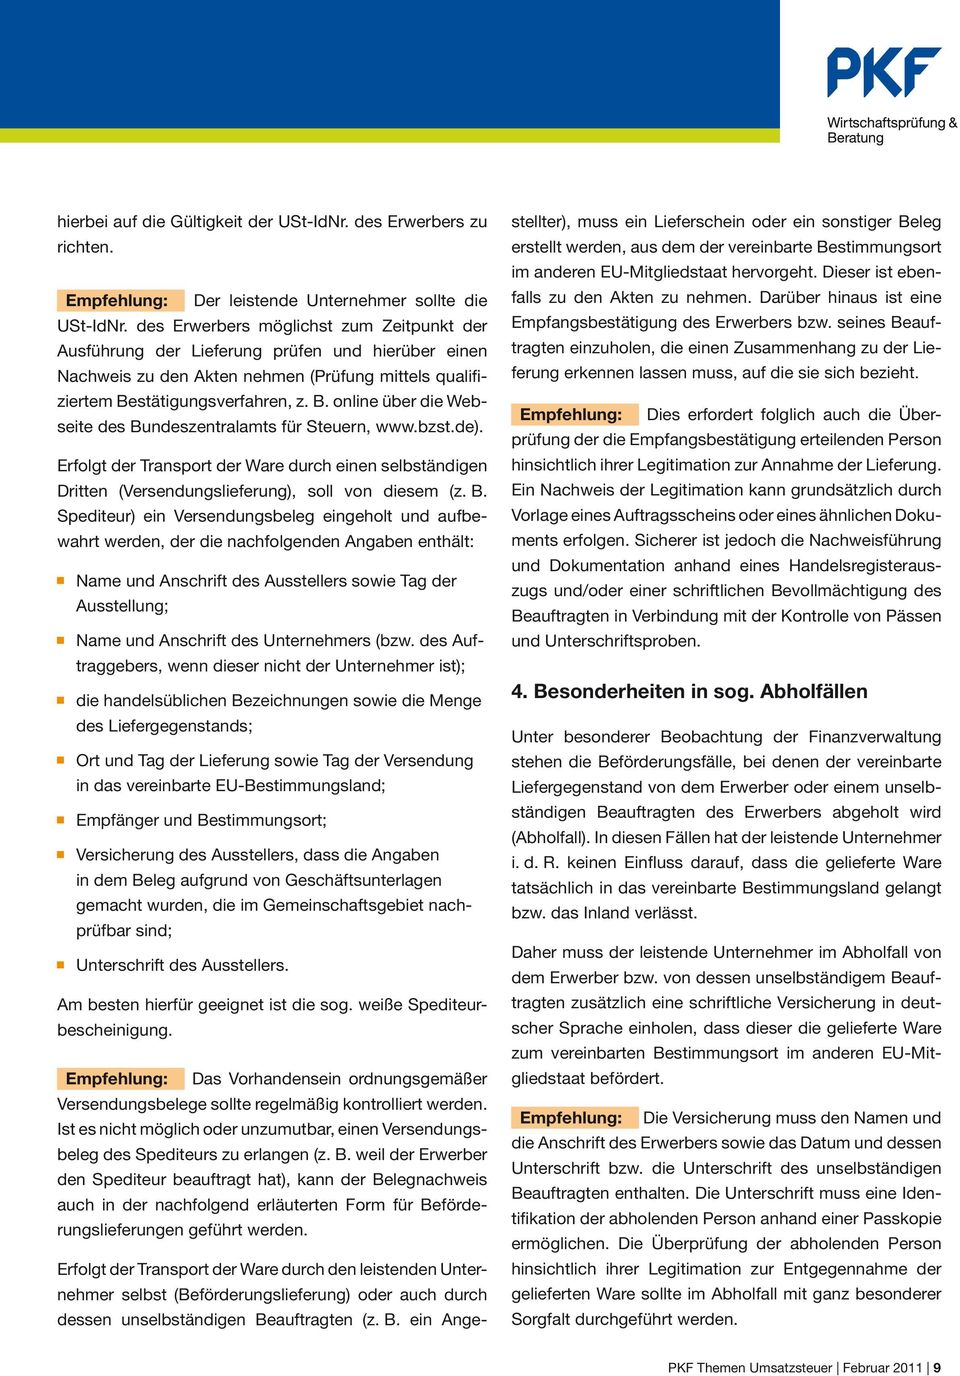 stätigungsverfahren, z. B. online über die Webseite des Bundeszentralamts für Steuern, www.bzst.de).